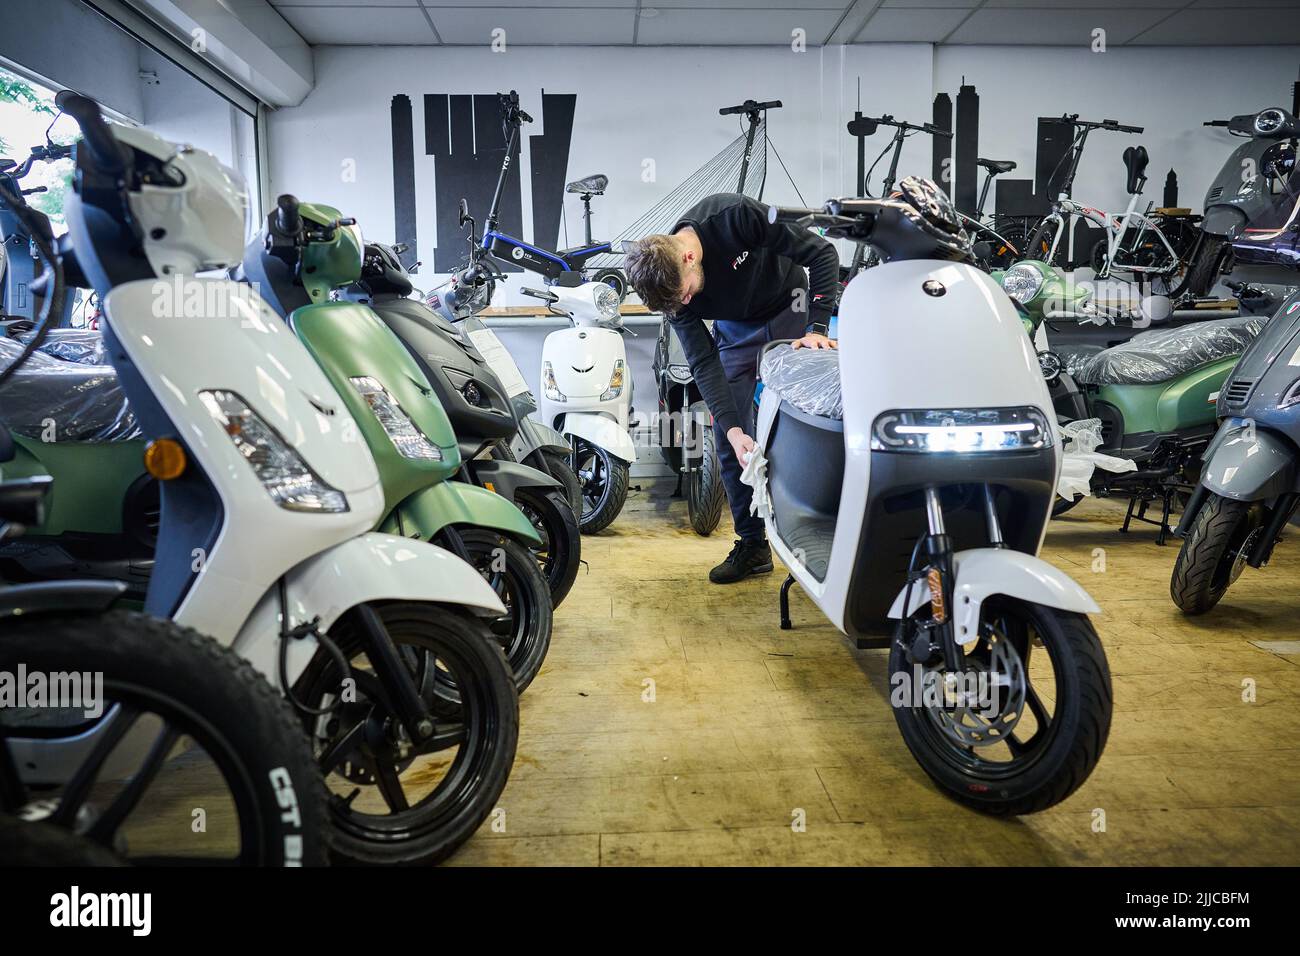 2022-07-25 12:42:44 ROTTERDAM - Elektro-Scooter in einem Geschäft. Zum ersten Mal werden mehr elektrische Mopeds verkauft als benzinbetriebene Mopeds. In der ersten Jahreshälfte waren mehr als die Hälfte der verkauften Mopeds elektrisch. ANP PHIL NIJHUIS niederlande Out - belgien Out Stockfoto